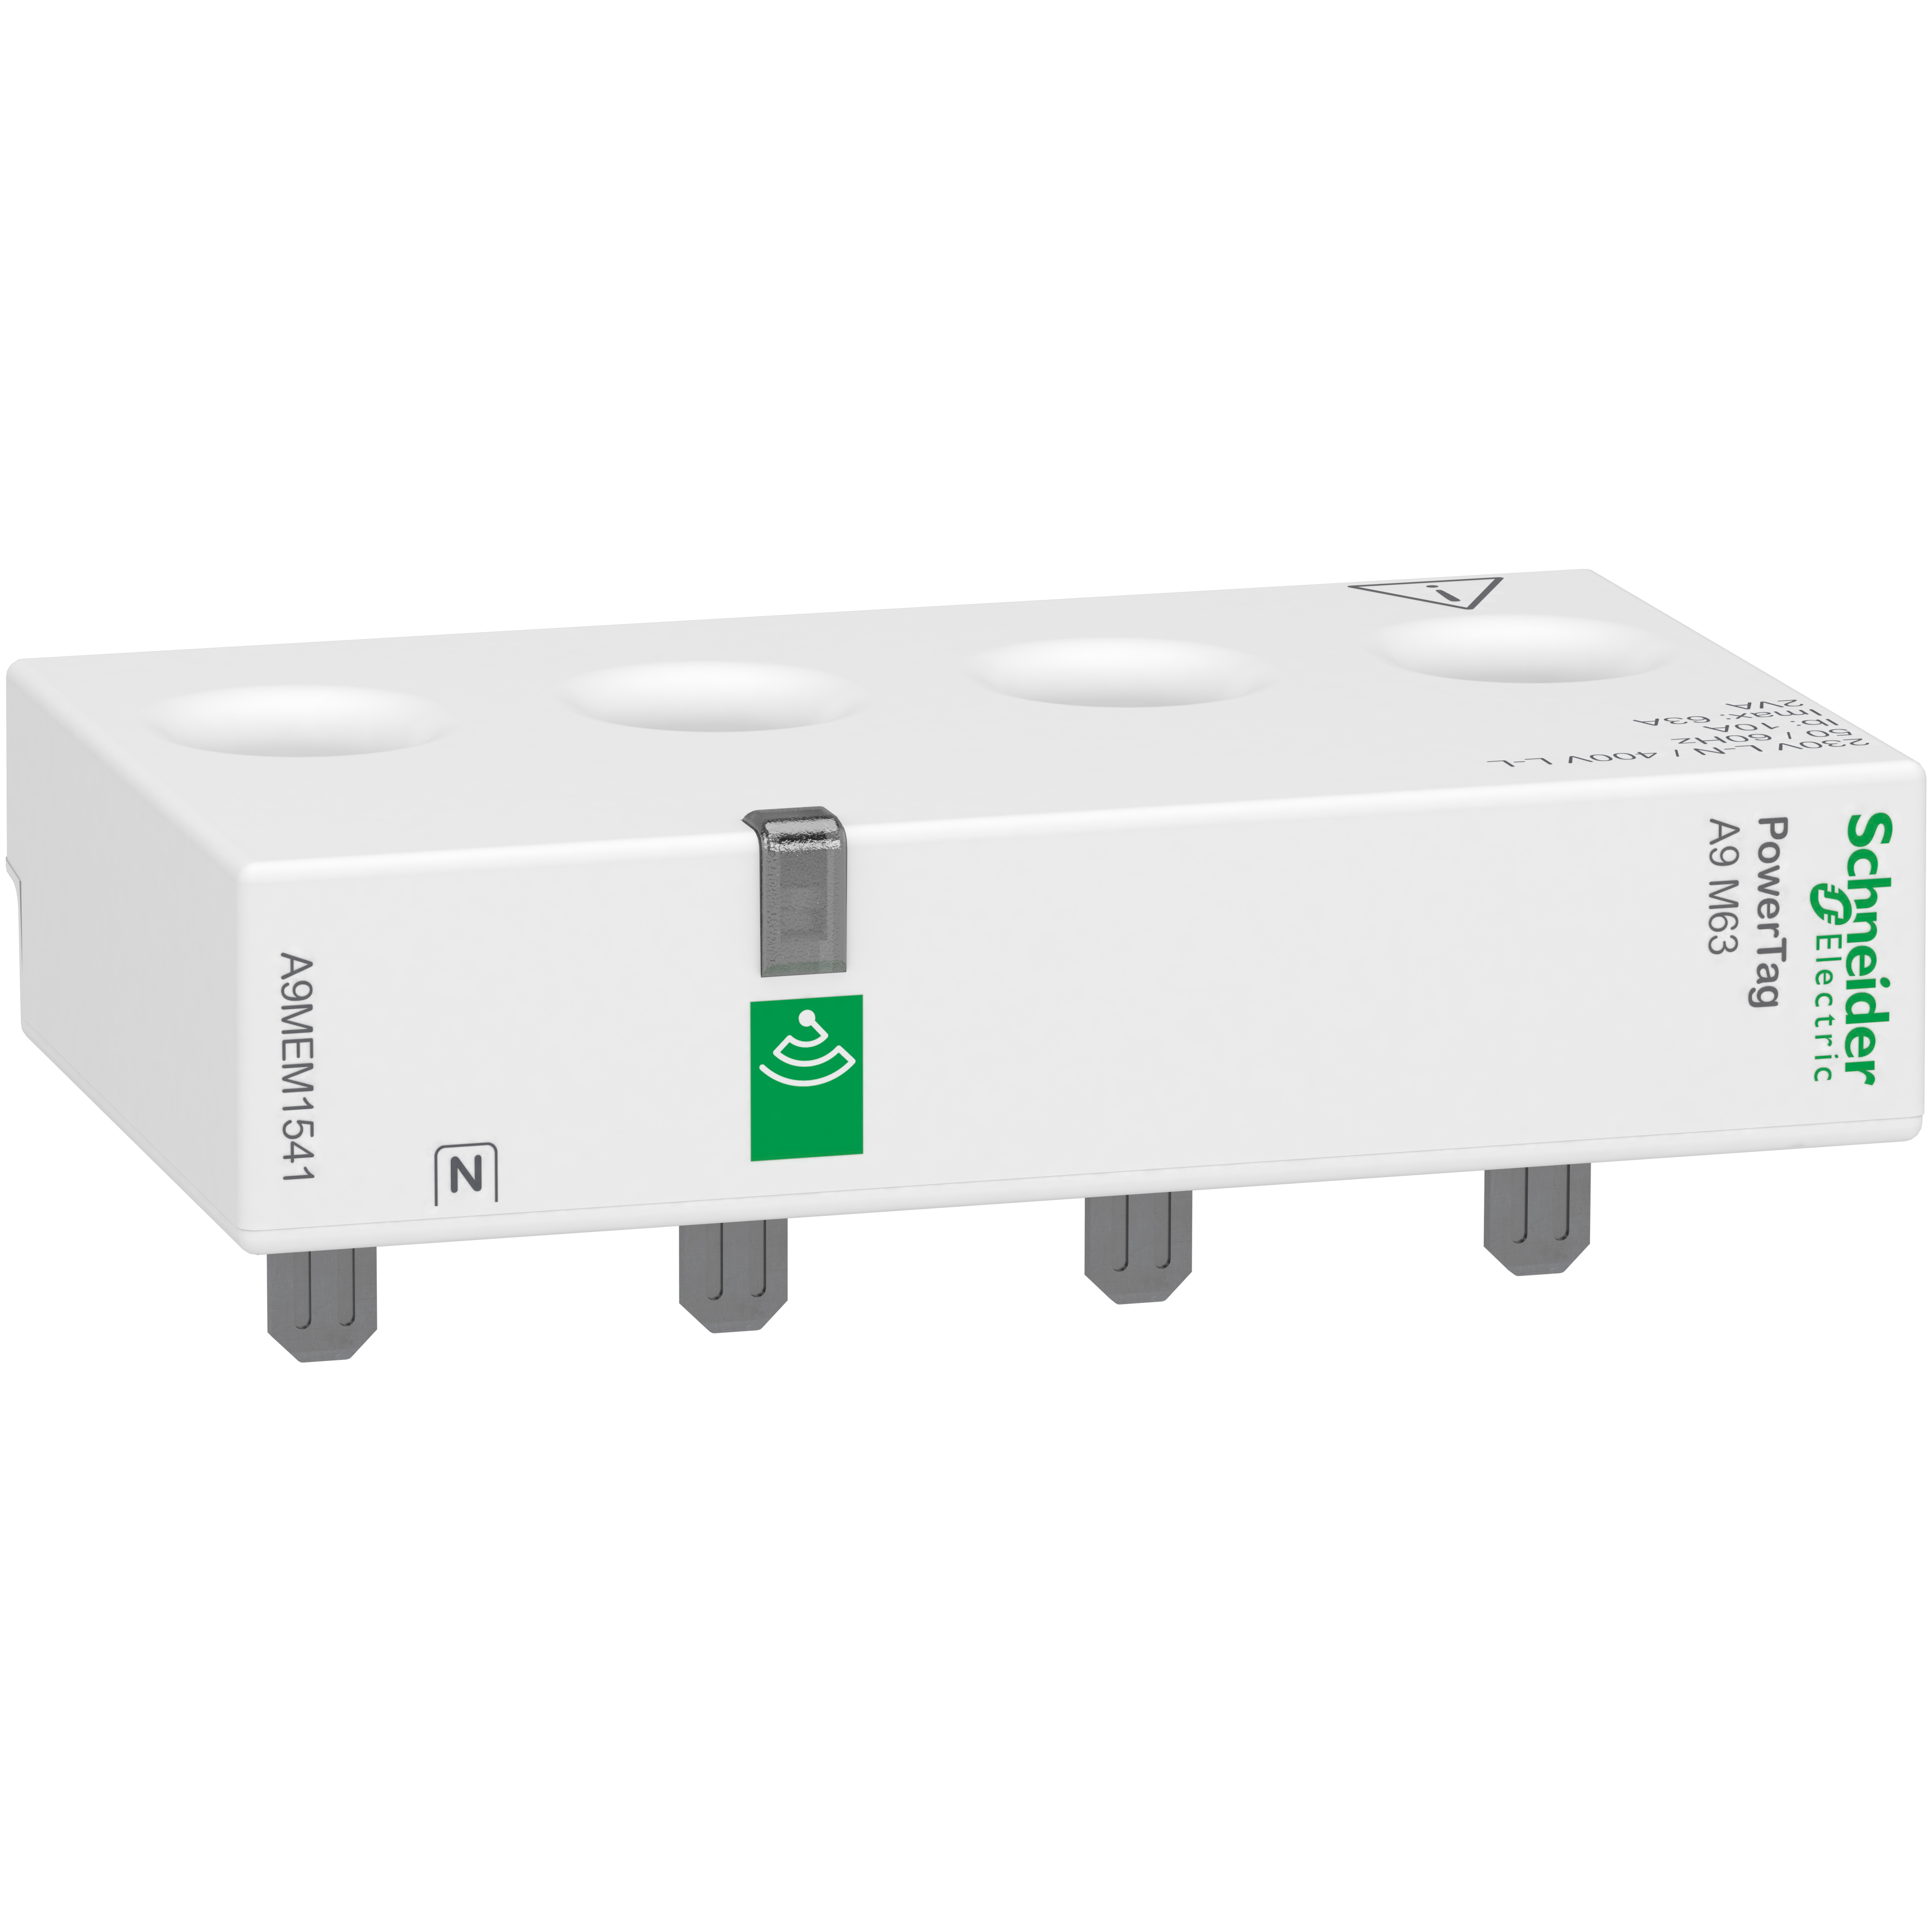 PowerTag A9 M63: bezicni senzor za monitoring energije, 3p+N, 63A, gornja konekcija